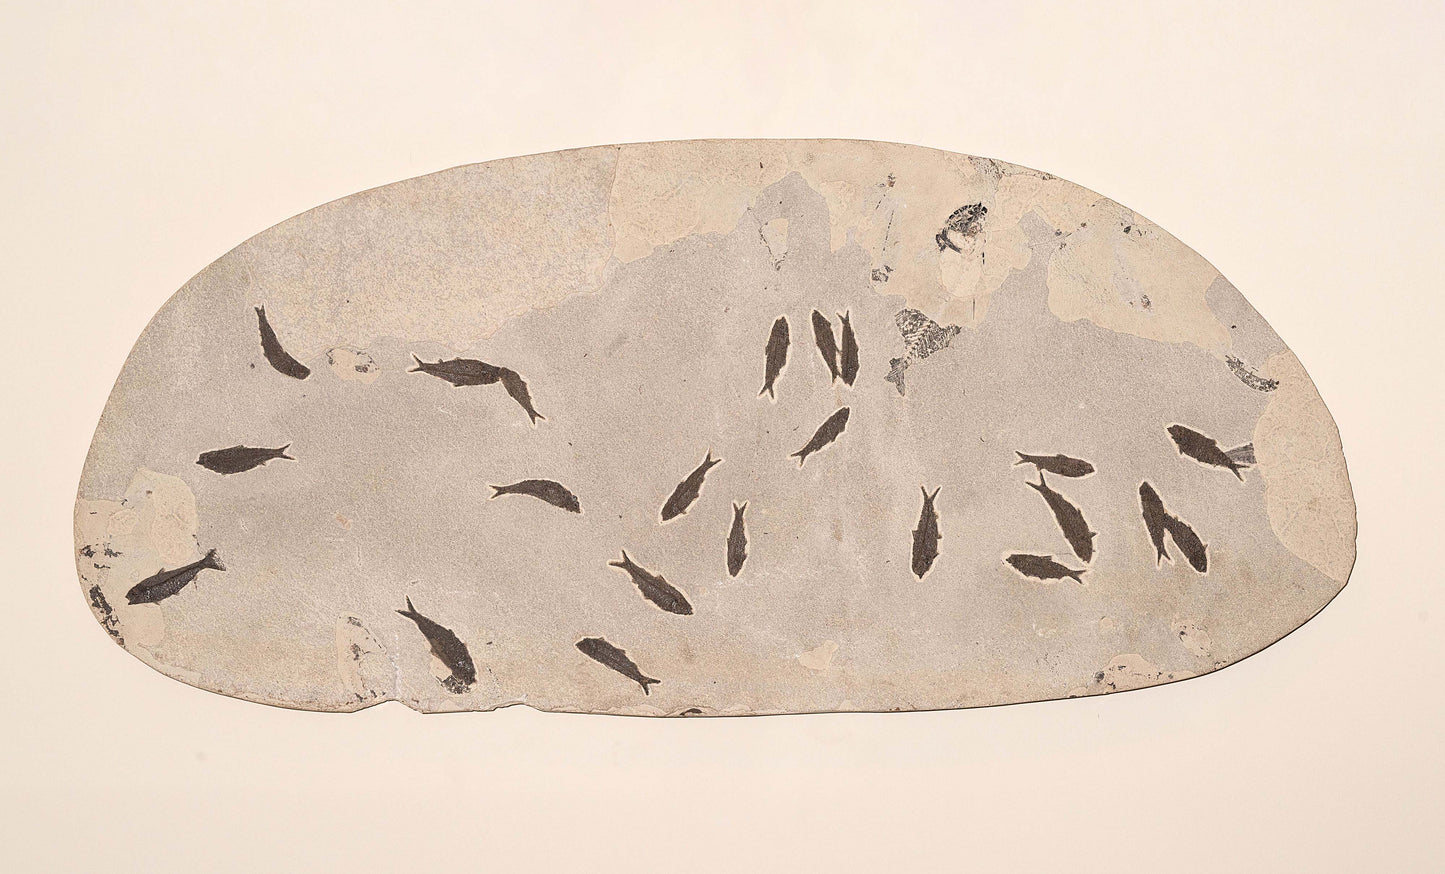 Fossilized School of Knightia Fish in Limestone